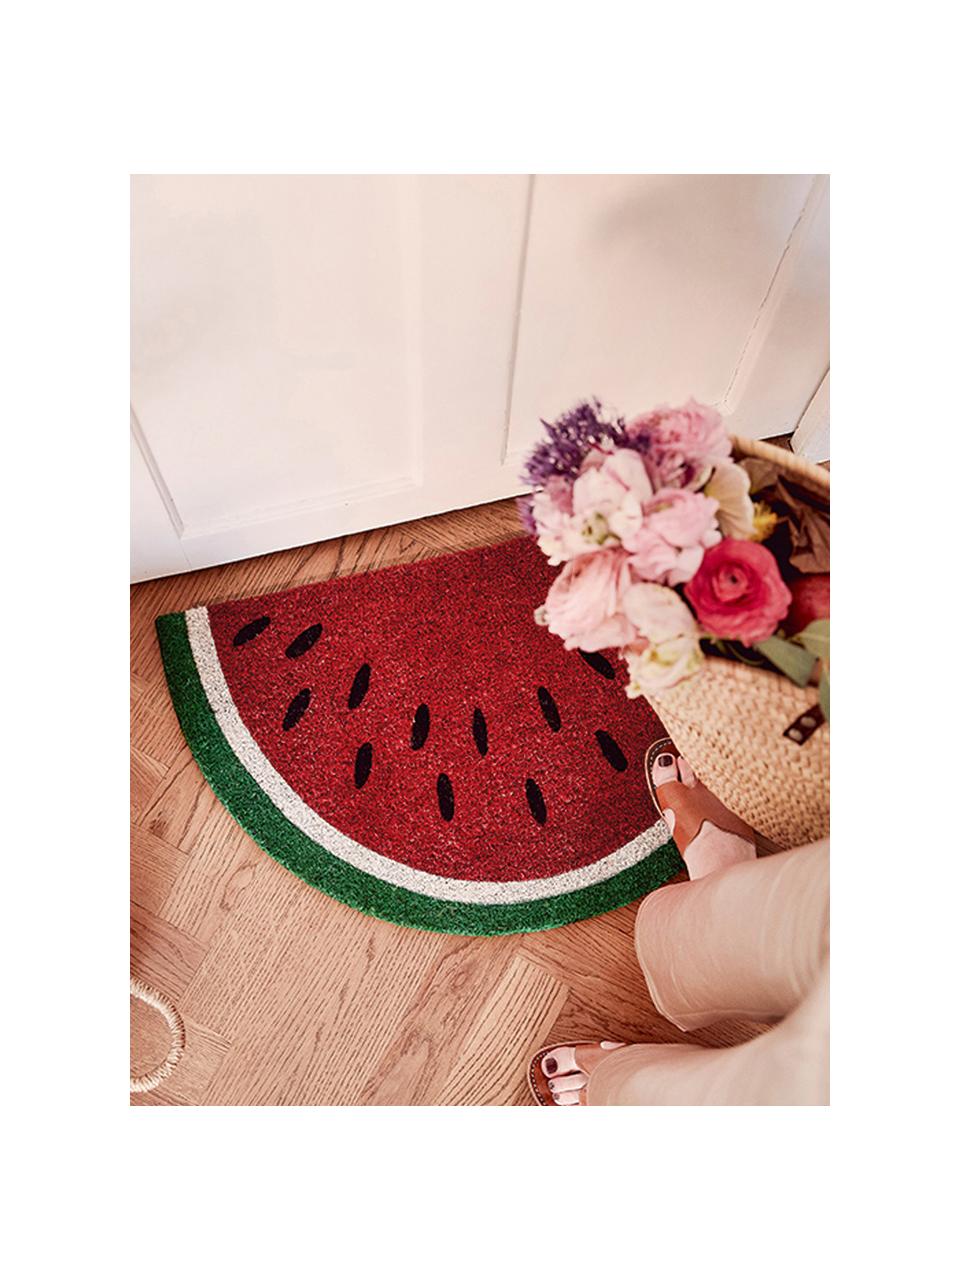 Fußmatte Watermelon, Oberseite: Kokosfaser, Unterseite: Kunststoff (PVC), Mehrfarbig, B 43 x L 71 cm